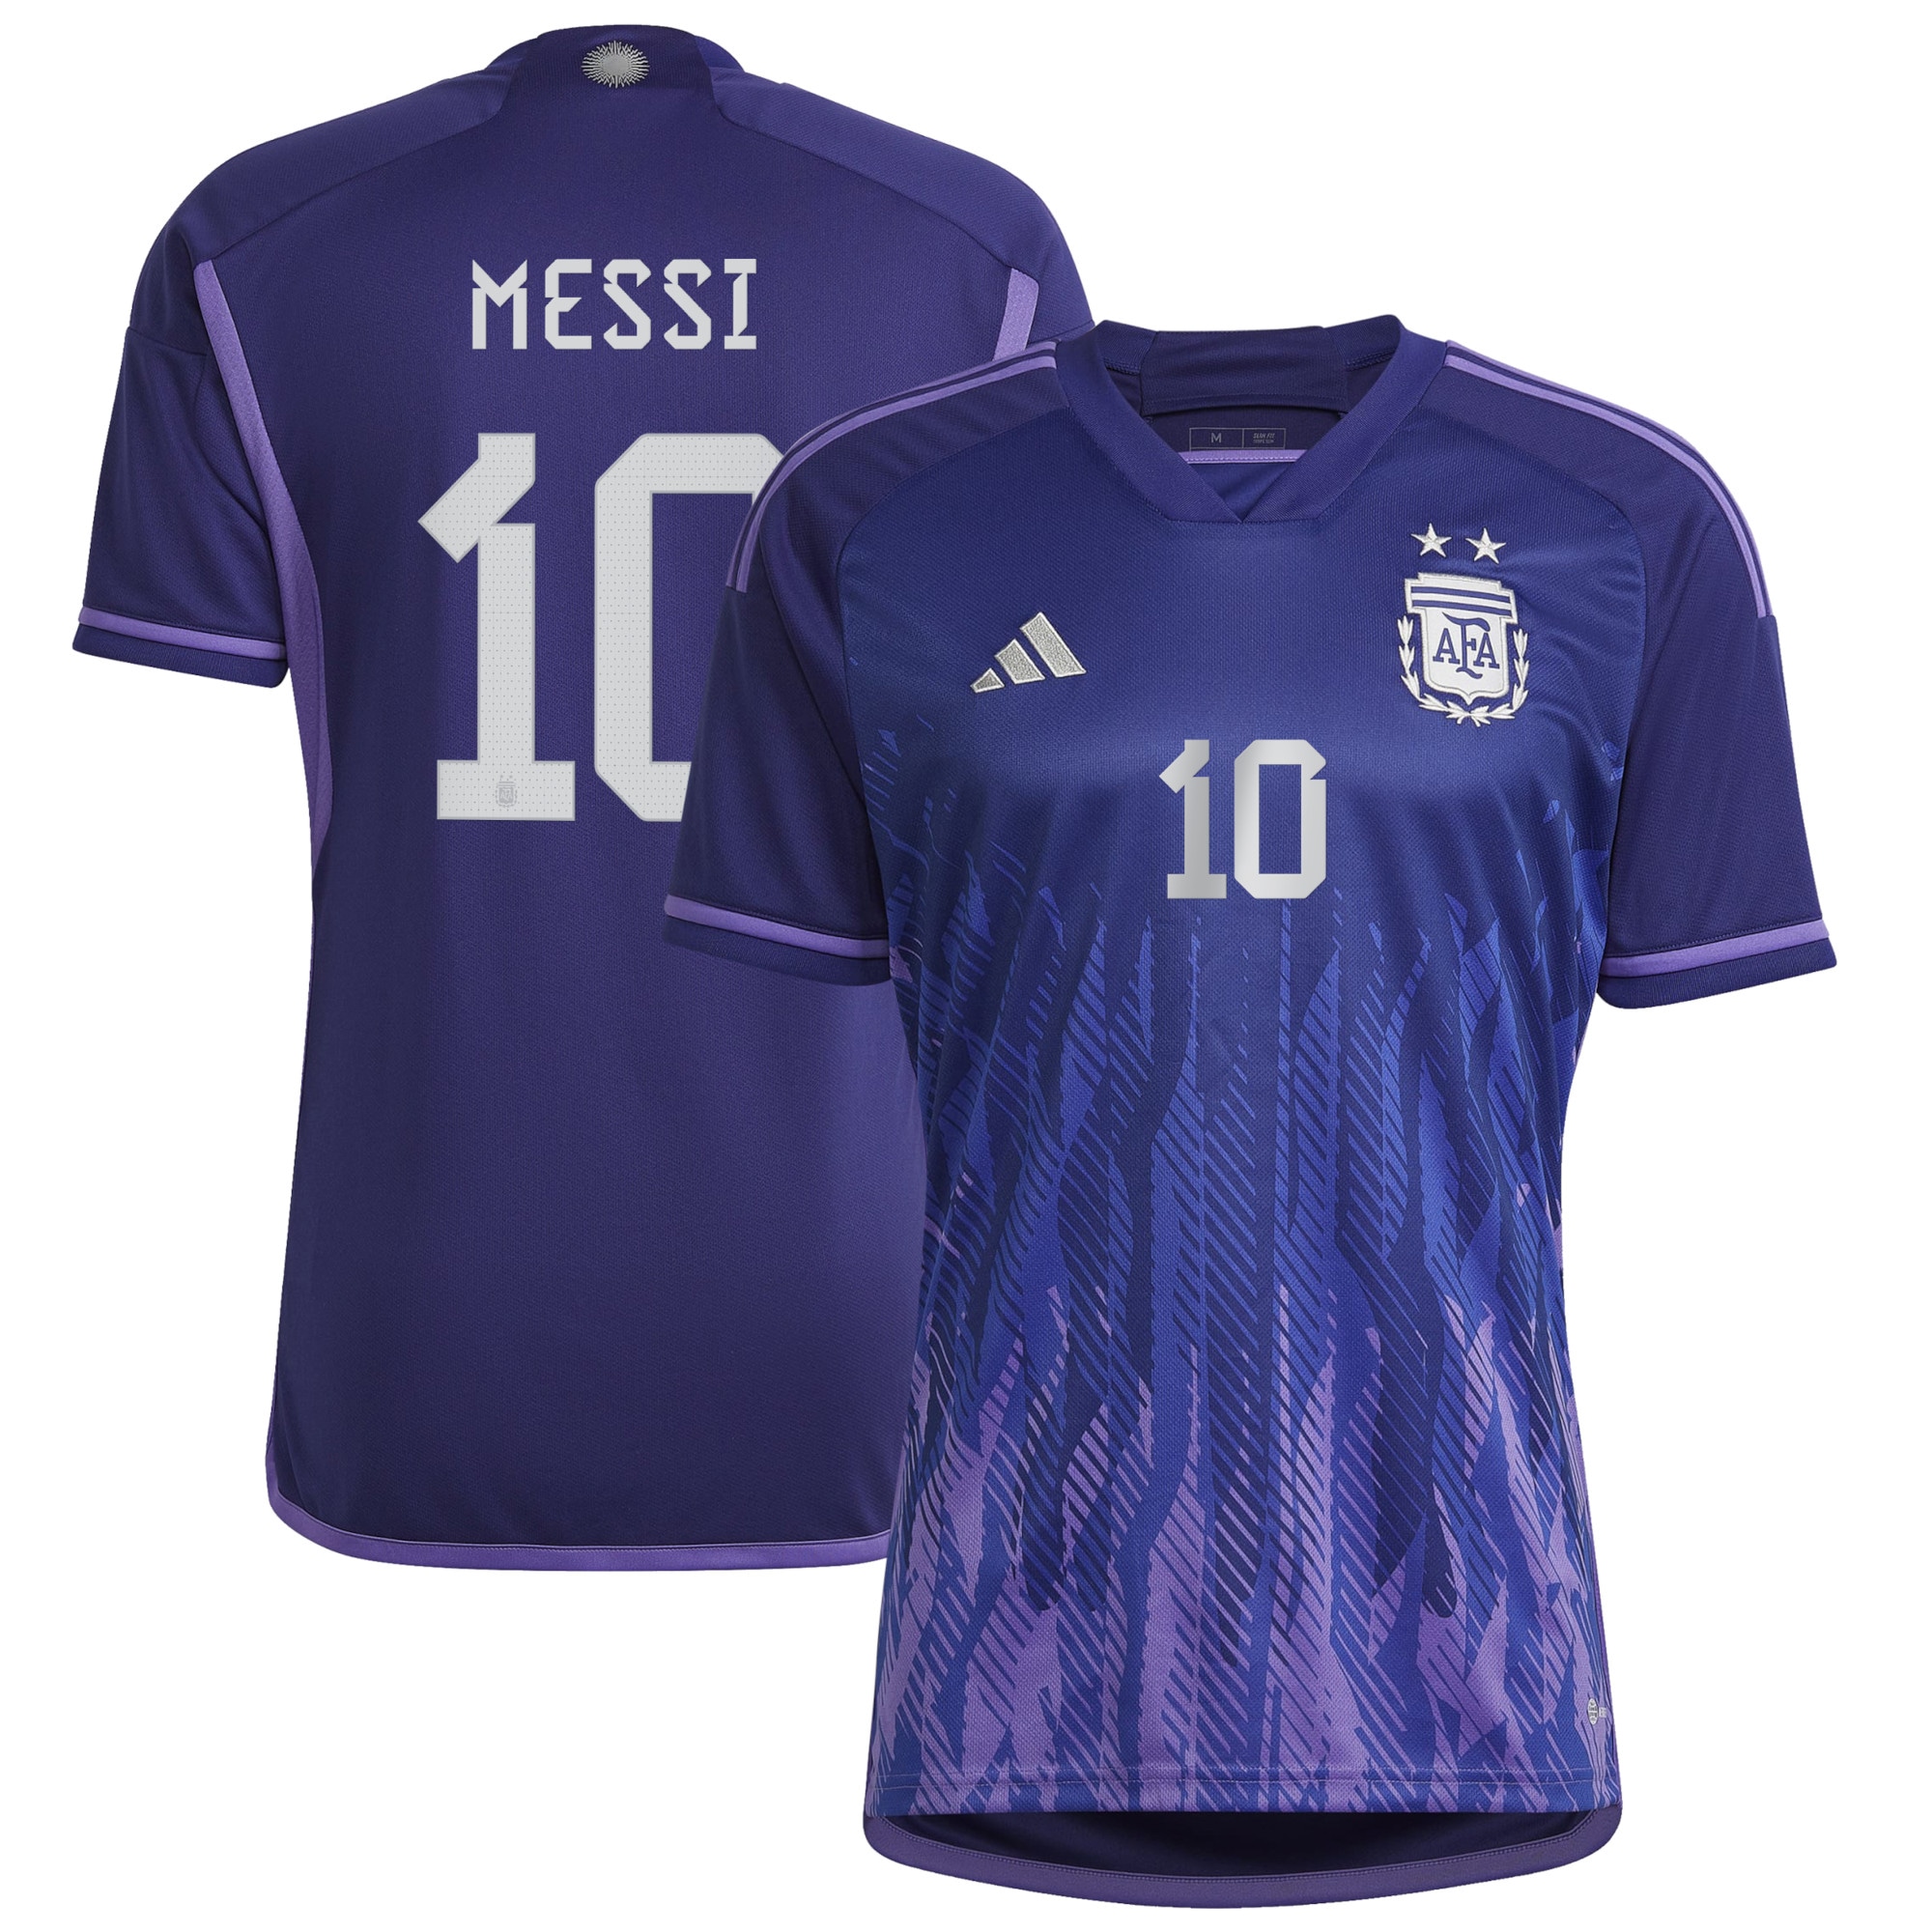 Adidas Argentina Away Shirt with Messi 10 Printing